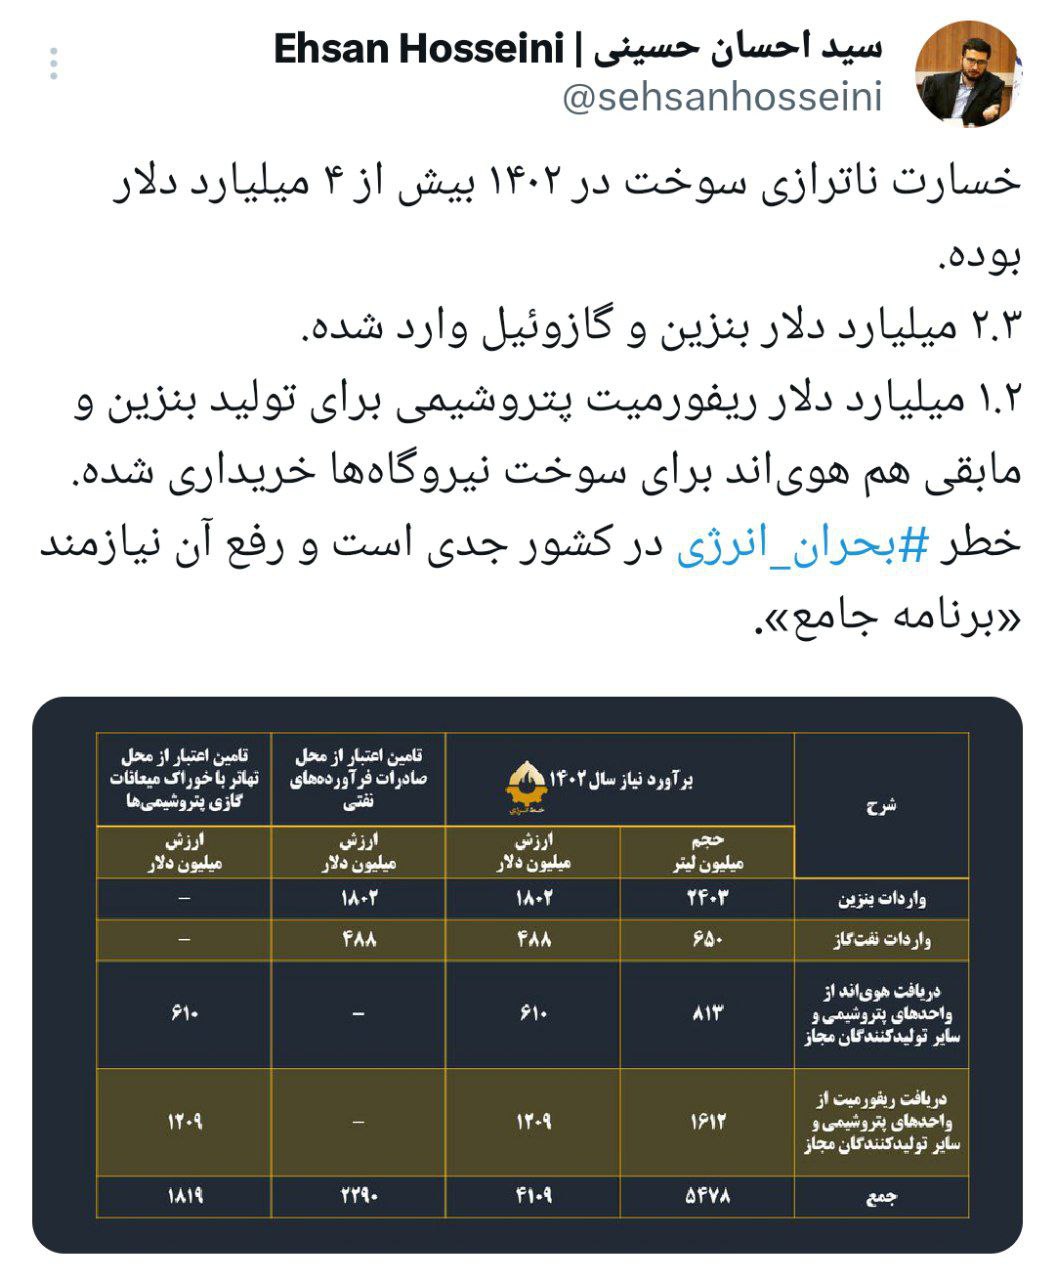 توییت نوشت | twitter | سید احسان حسینی خبرگزاری فارس